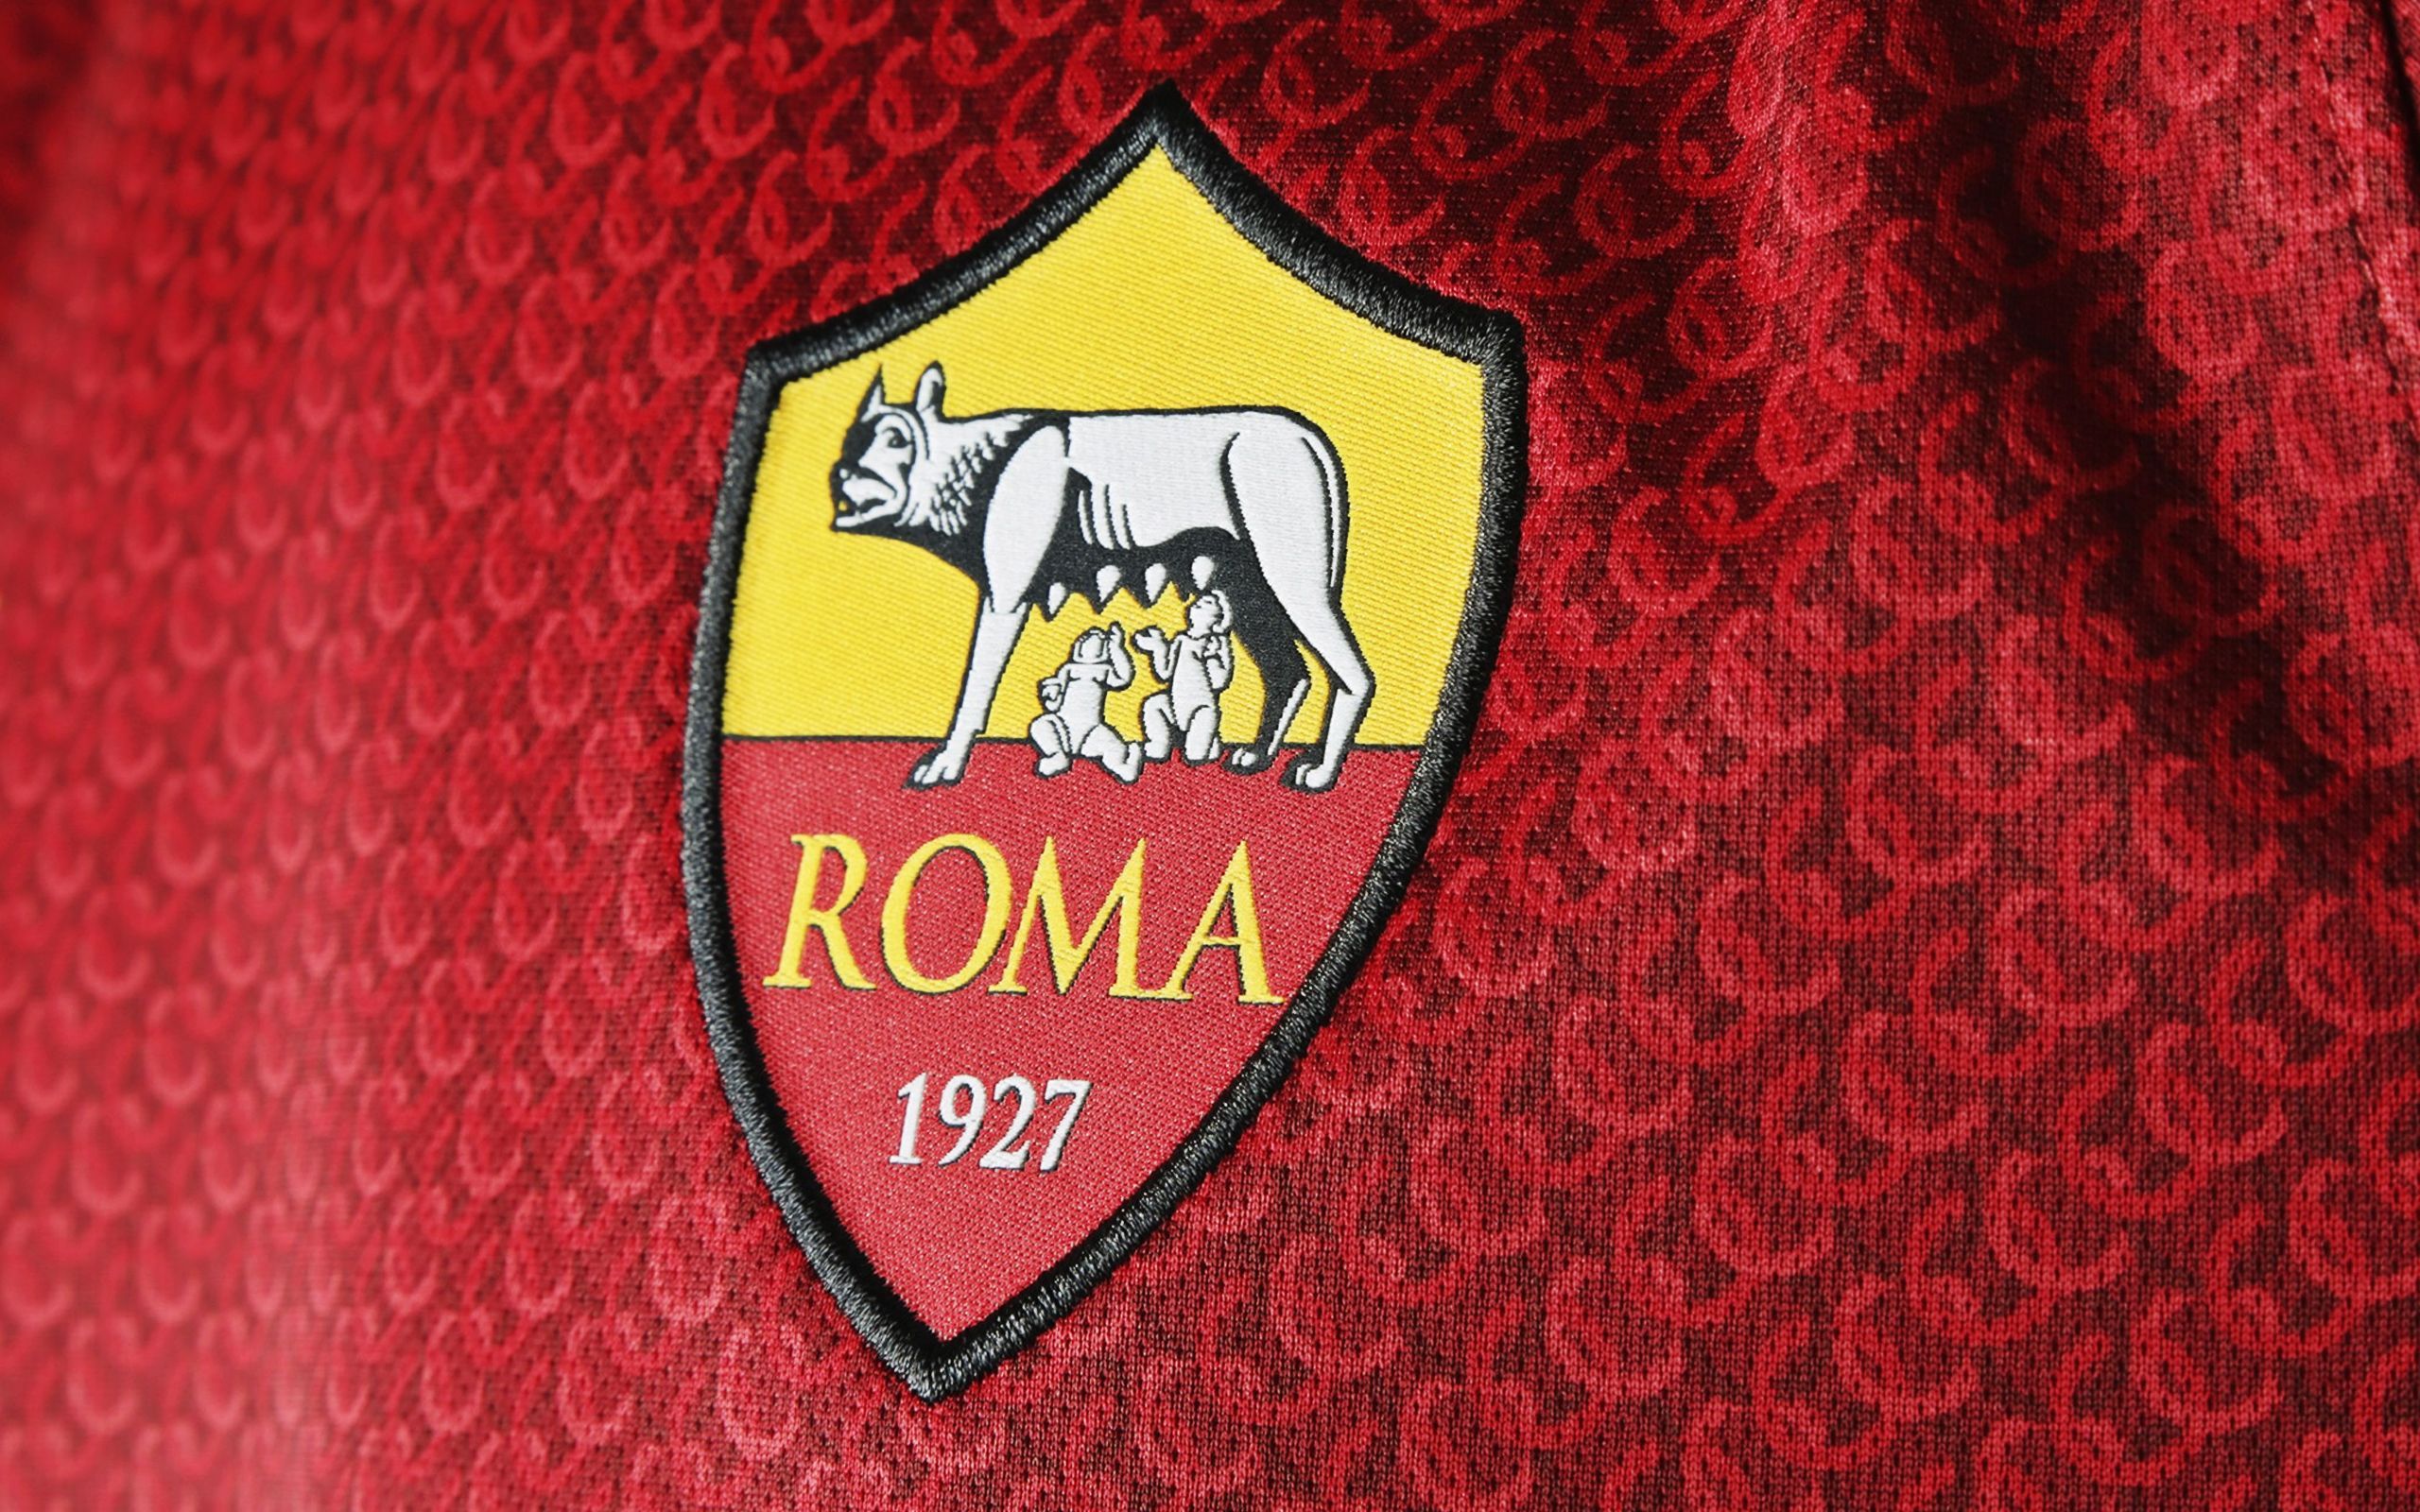 Італійська "Рома" не буде представлена у FIFA 21